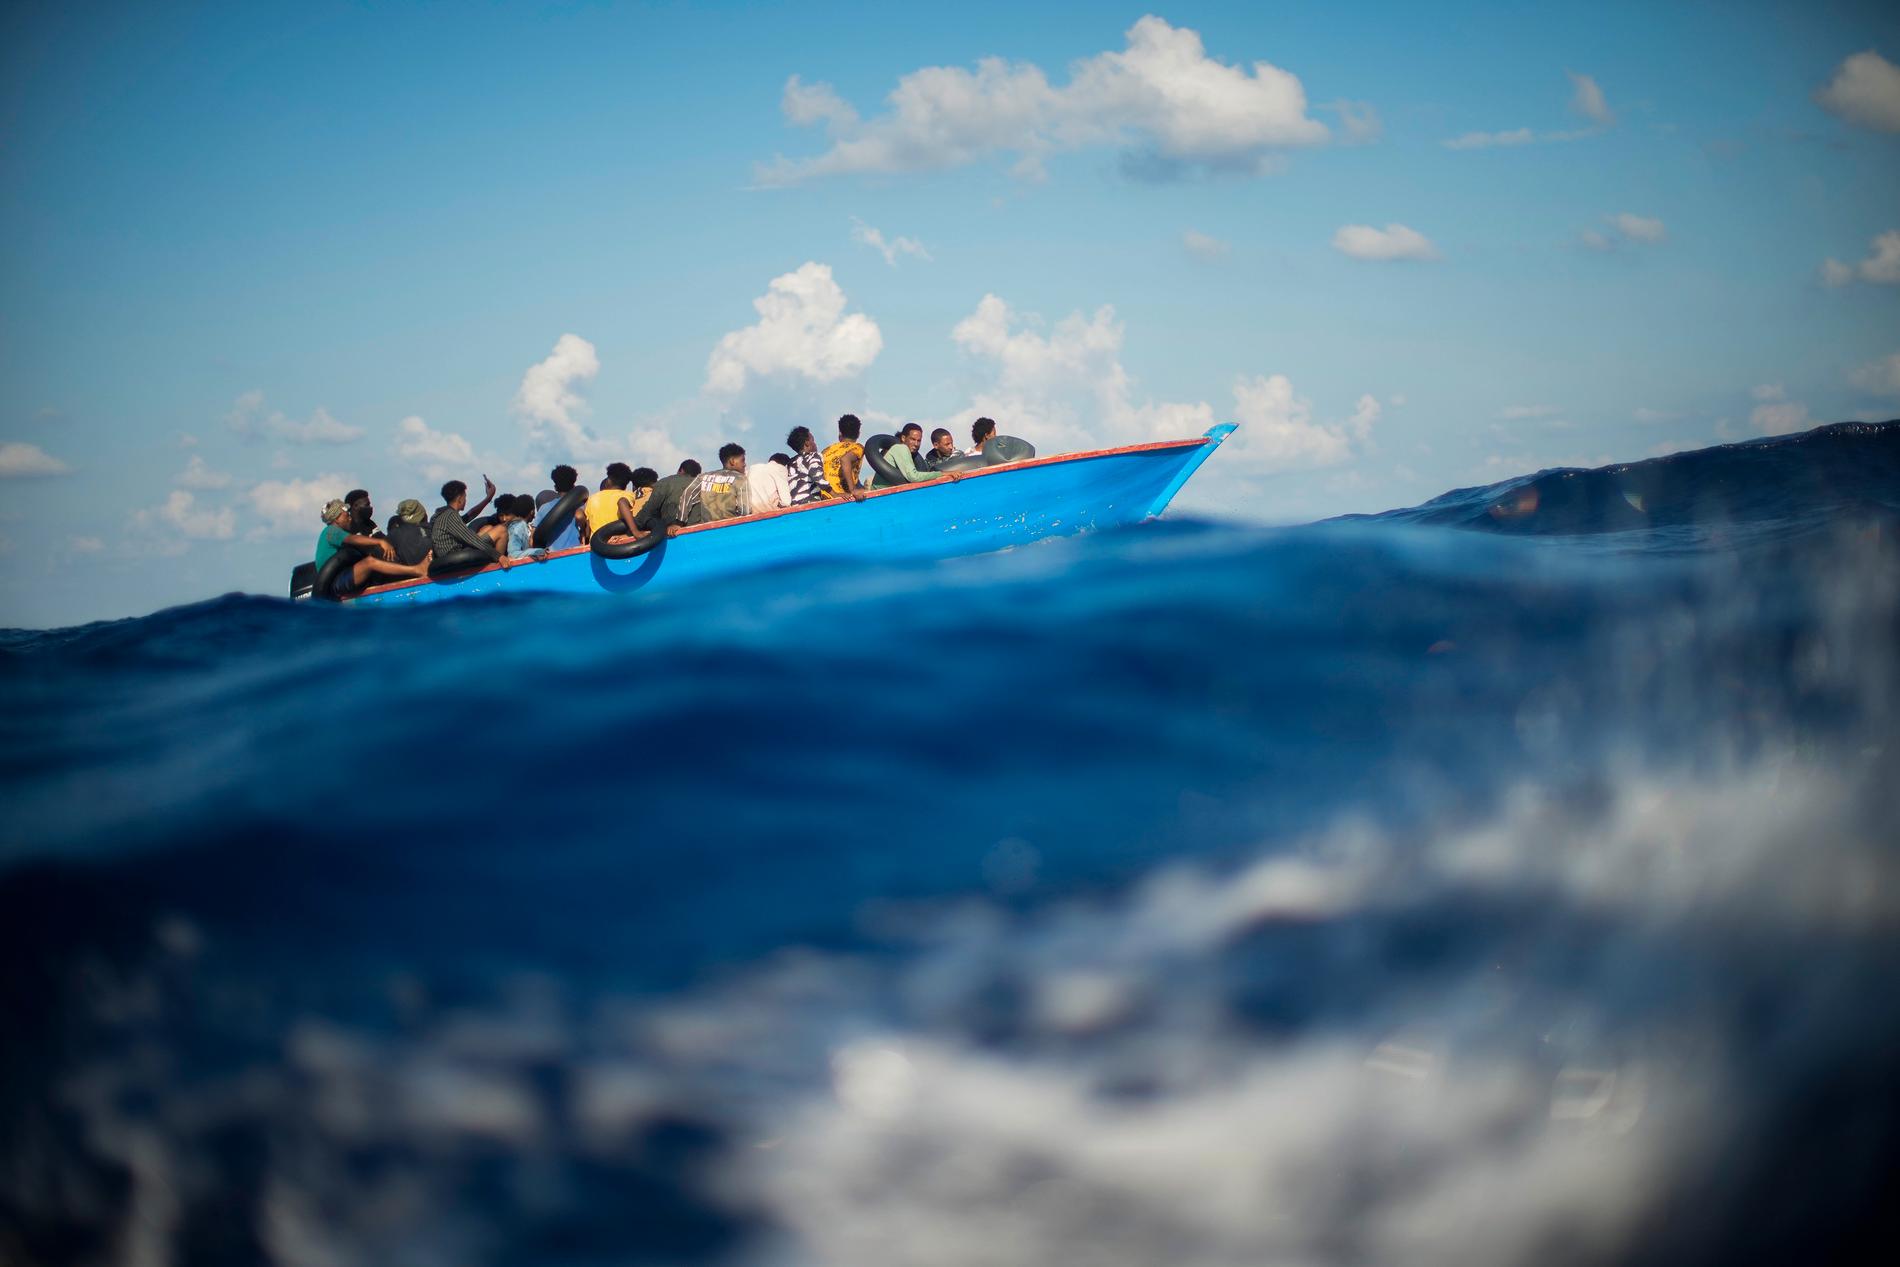 Dödliga vågor. Migrantrutten över centrala Medelhavet är ökänd för att ta många liv. Ändå ökar antalet människor som försöker ta sig till Europa den vägen.